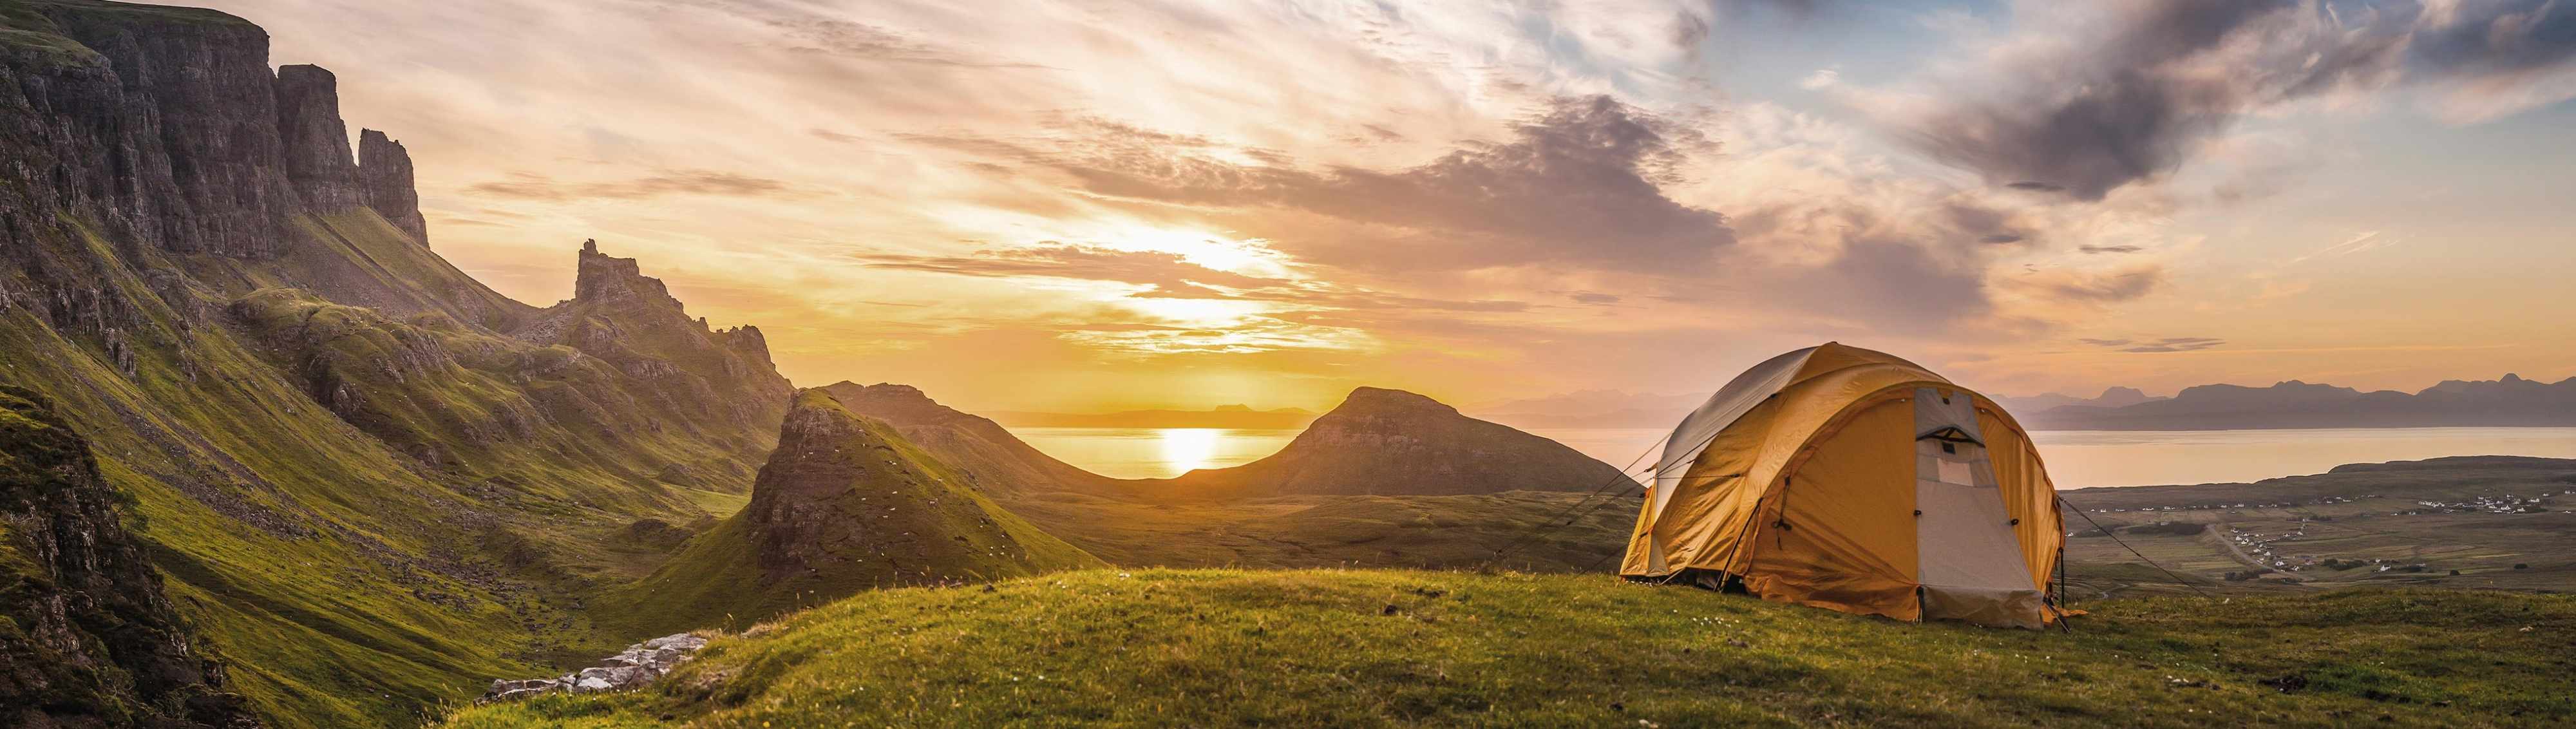 Zelt bei Sonnenuntergang vor Berglandschaft